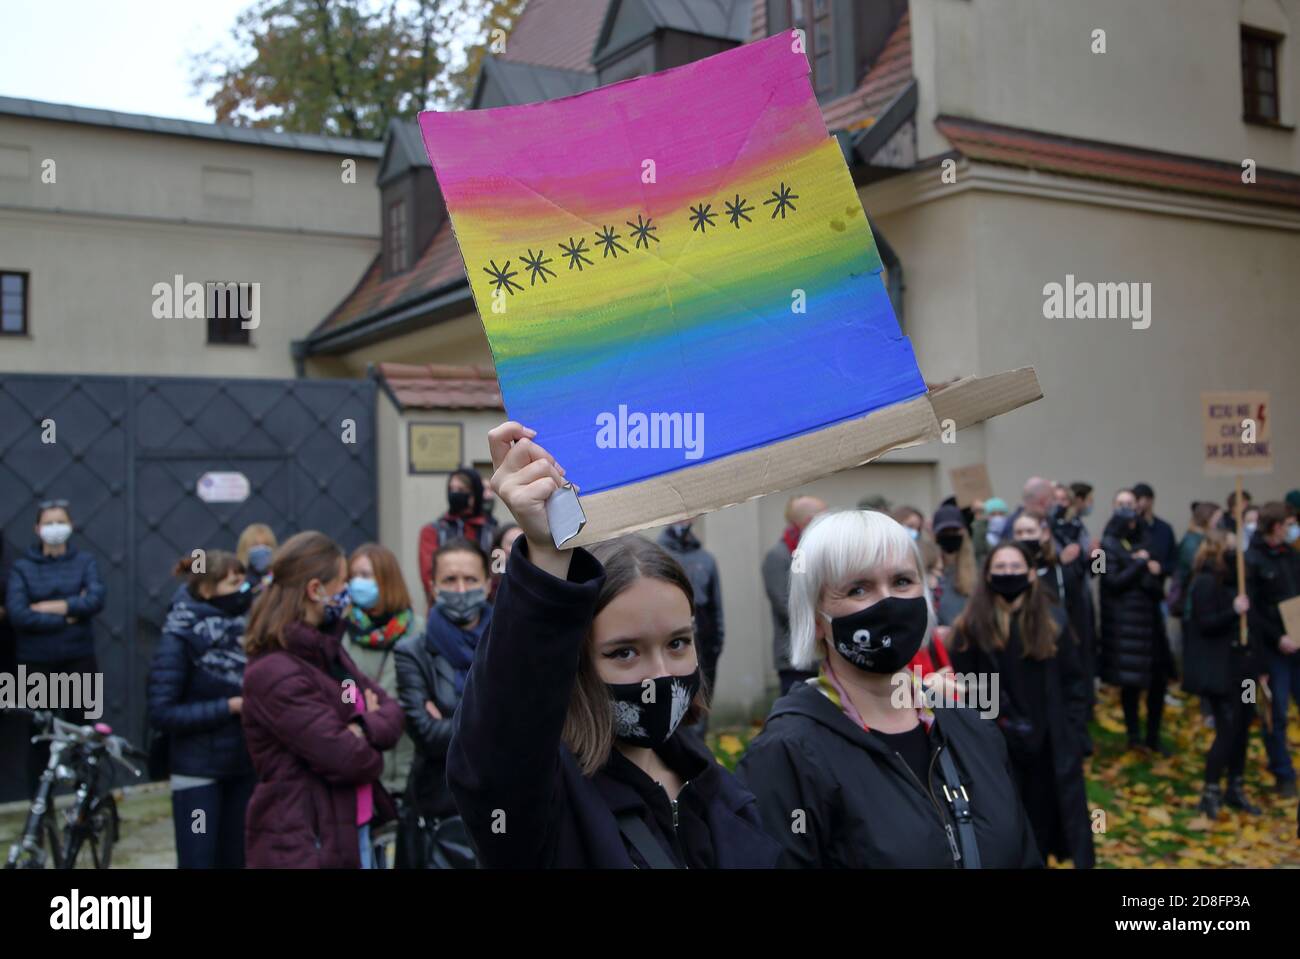 Krakau / Polen - oktober 25 2020: Regierungsfeindliche Demonstration nach Entscheidung des Verfassungsgerichts zum nahezu vollständigen Verbot der Abtreibung. Stockfoto